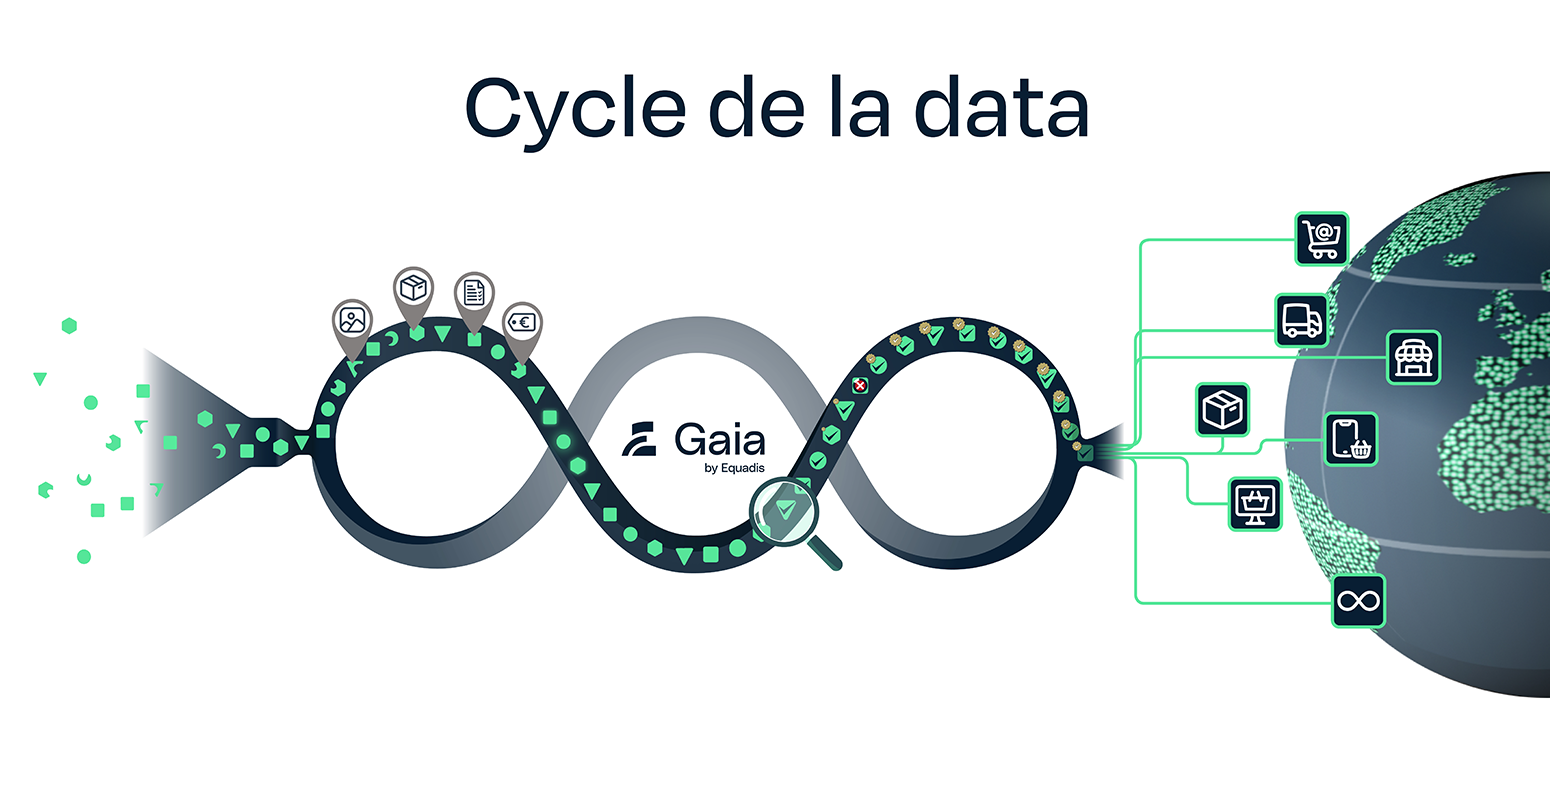 Le cycle de la data chez Equadis